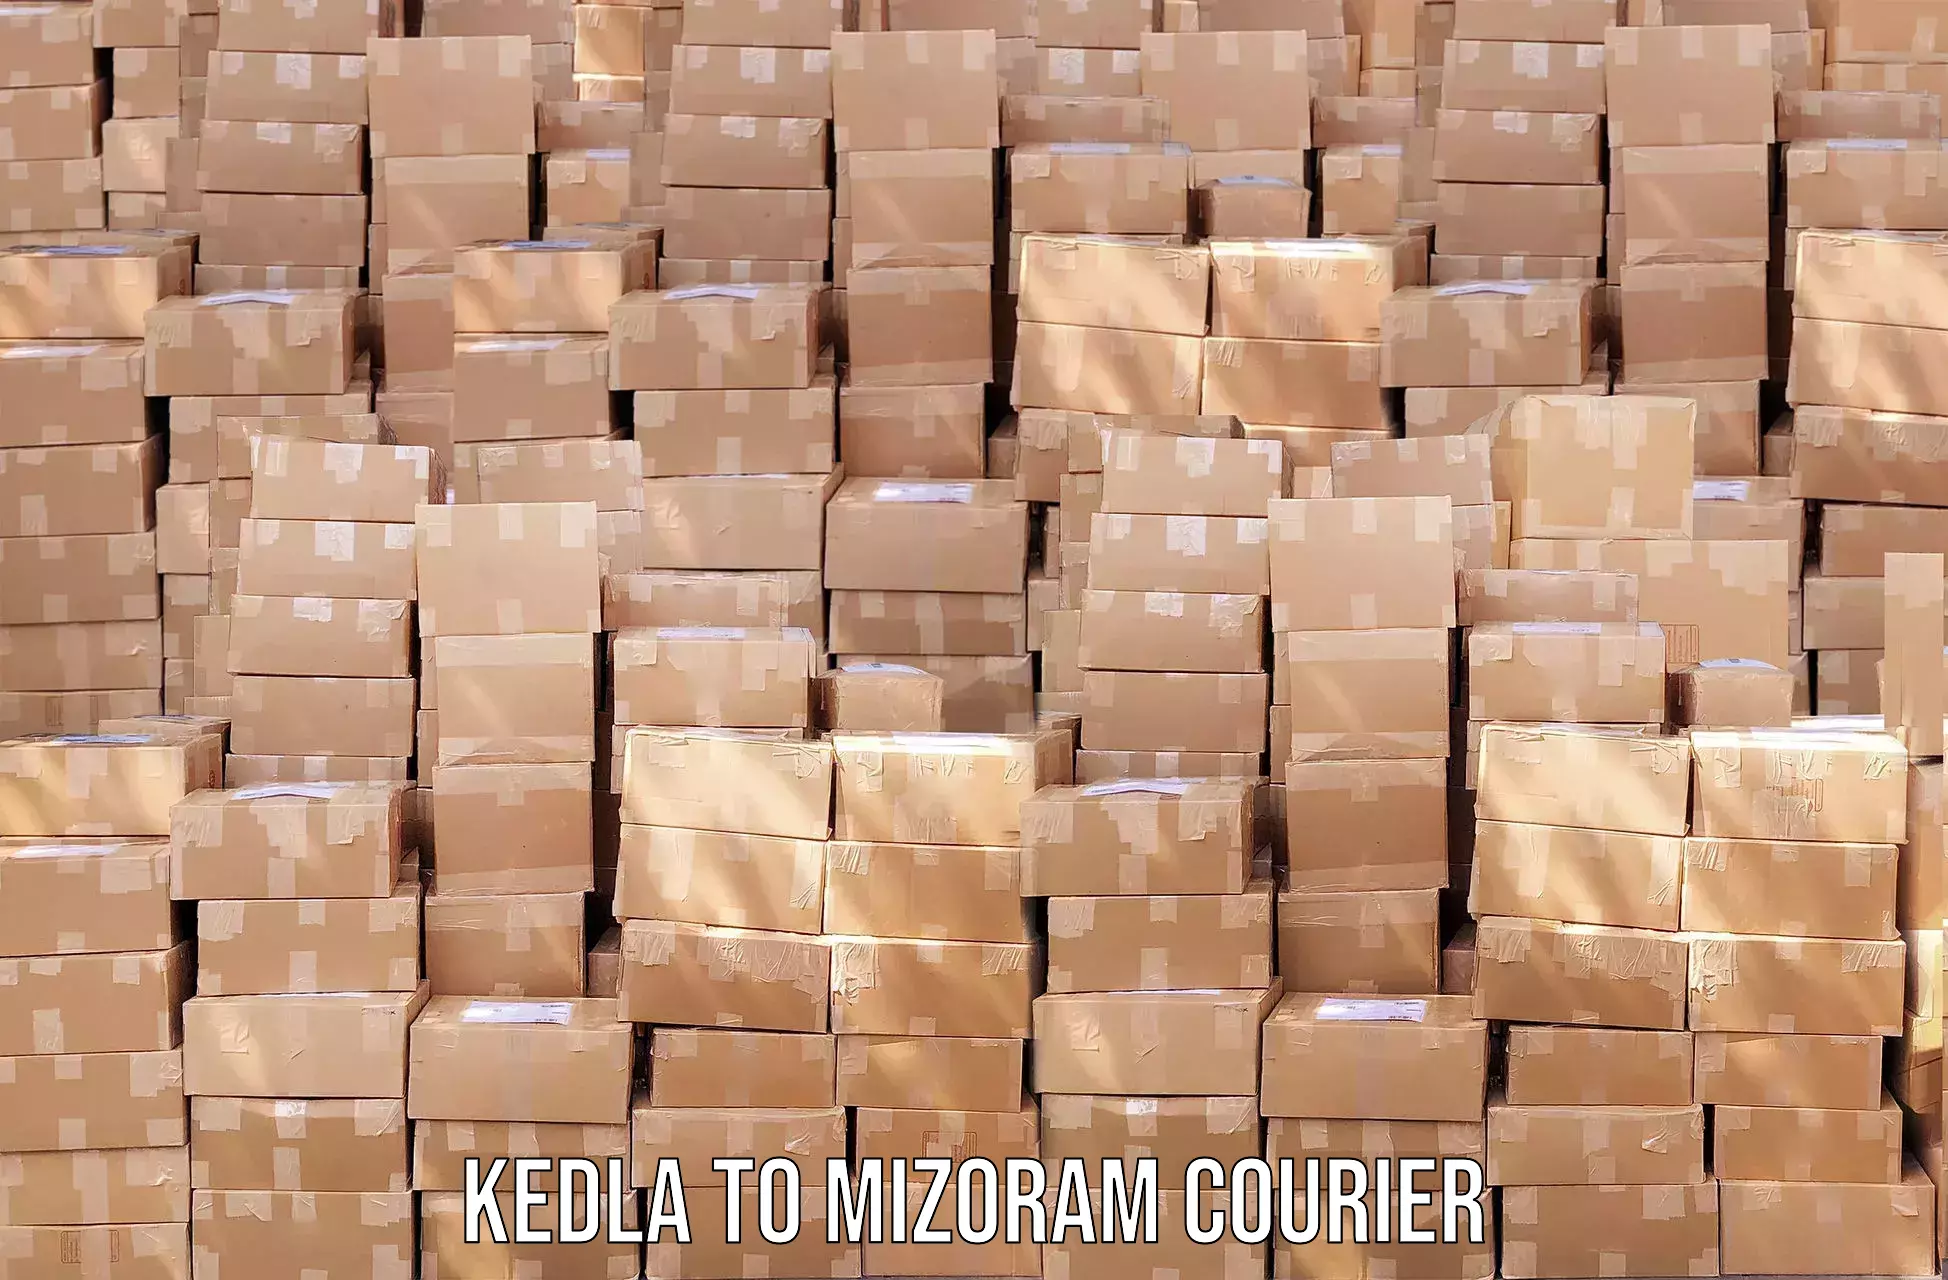 Door-to-door freight service Kedla to Mizoram